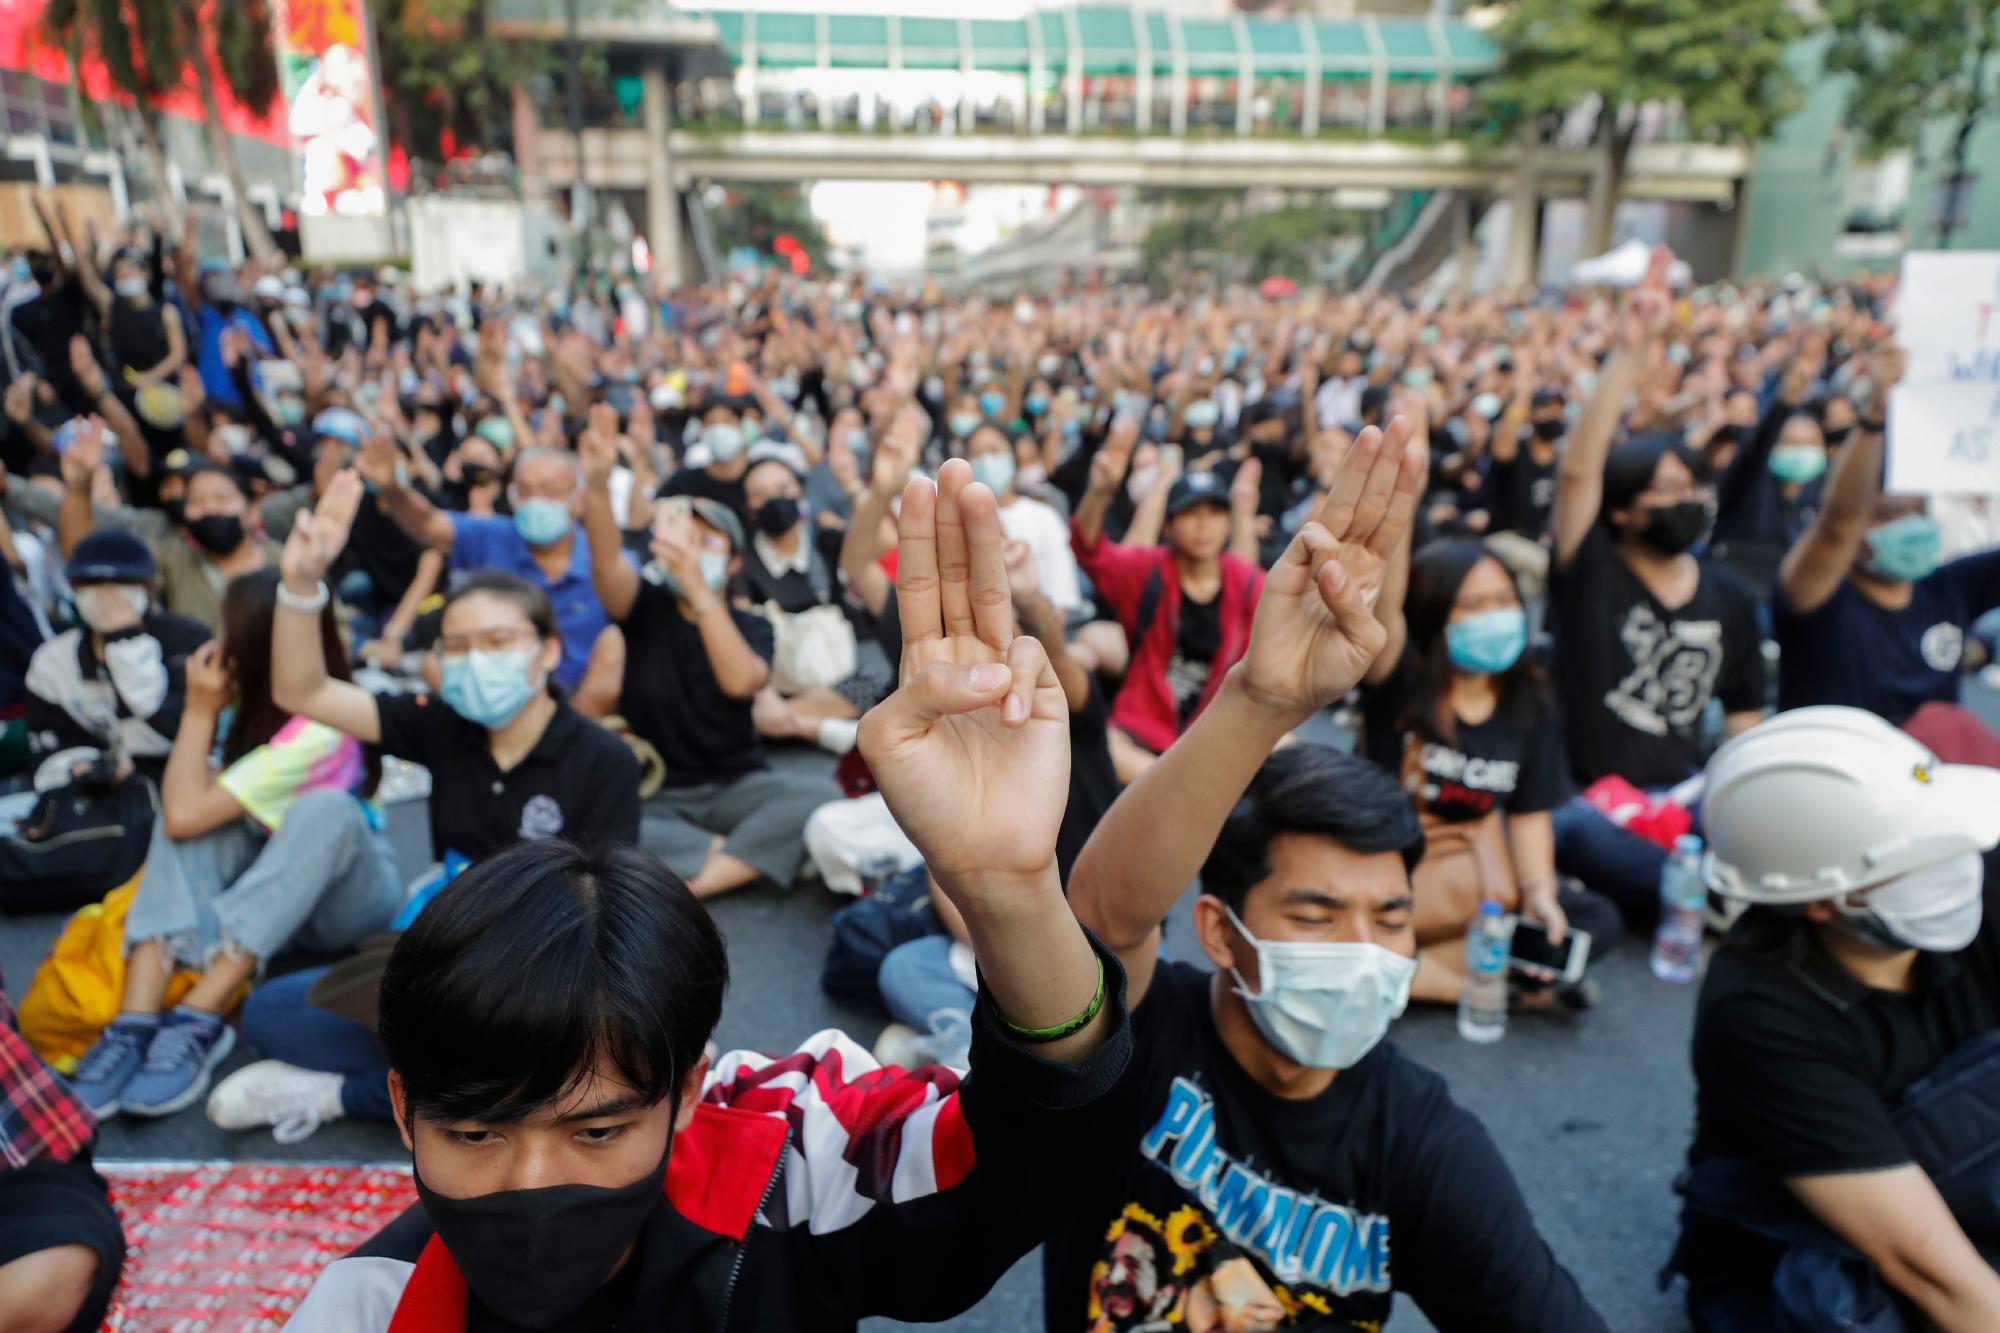 Manifestantes a favor de la democracia muestran el saludo de protesta de tres dedos durante una manifestación contra el gobierno en una importante intersección en Bangkok, Tailandia, el miércoles 18 de noviembre de 2020. La policía en la capital de Tailandia se prepara para posibles problemas el miércoles, un día después de una protesta en el exterior El parlamento de manifestantes a favor de la democracia se vio empañado por la violencia que dejó decenas de heridos. 